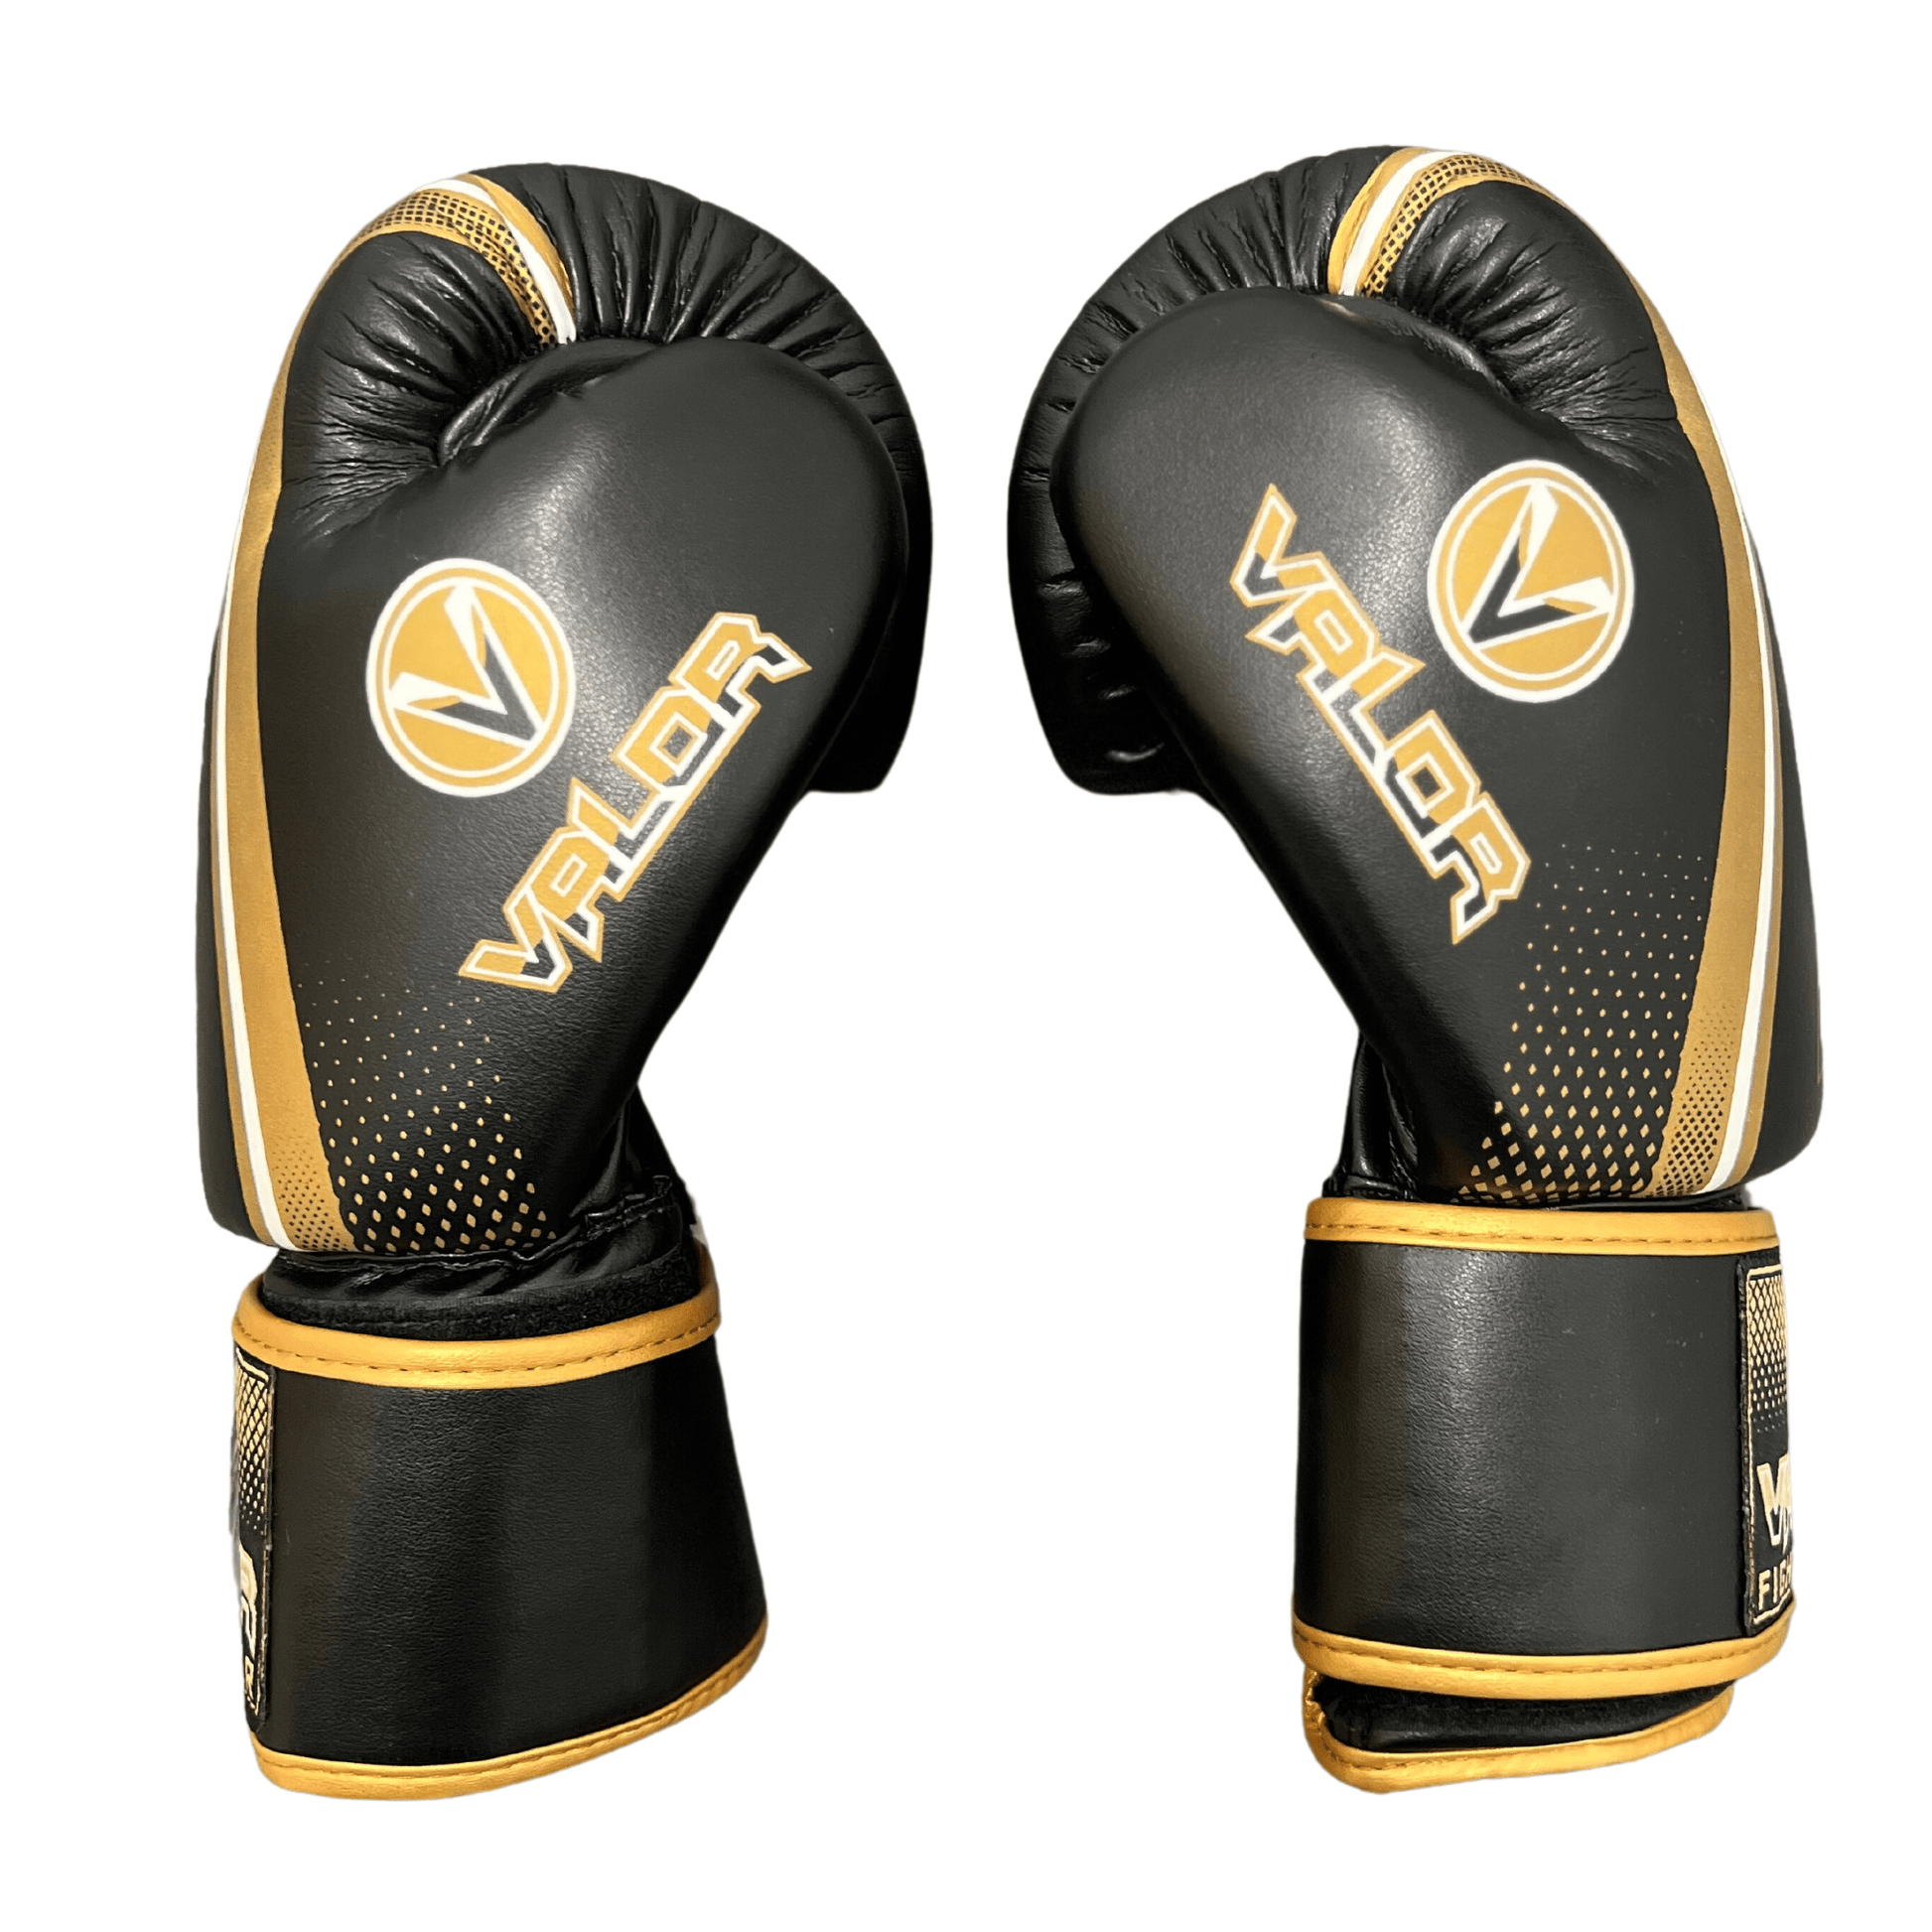 Fade 12oz Boxing Gloves - Black/Gold - Valor Fightwear